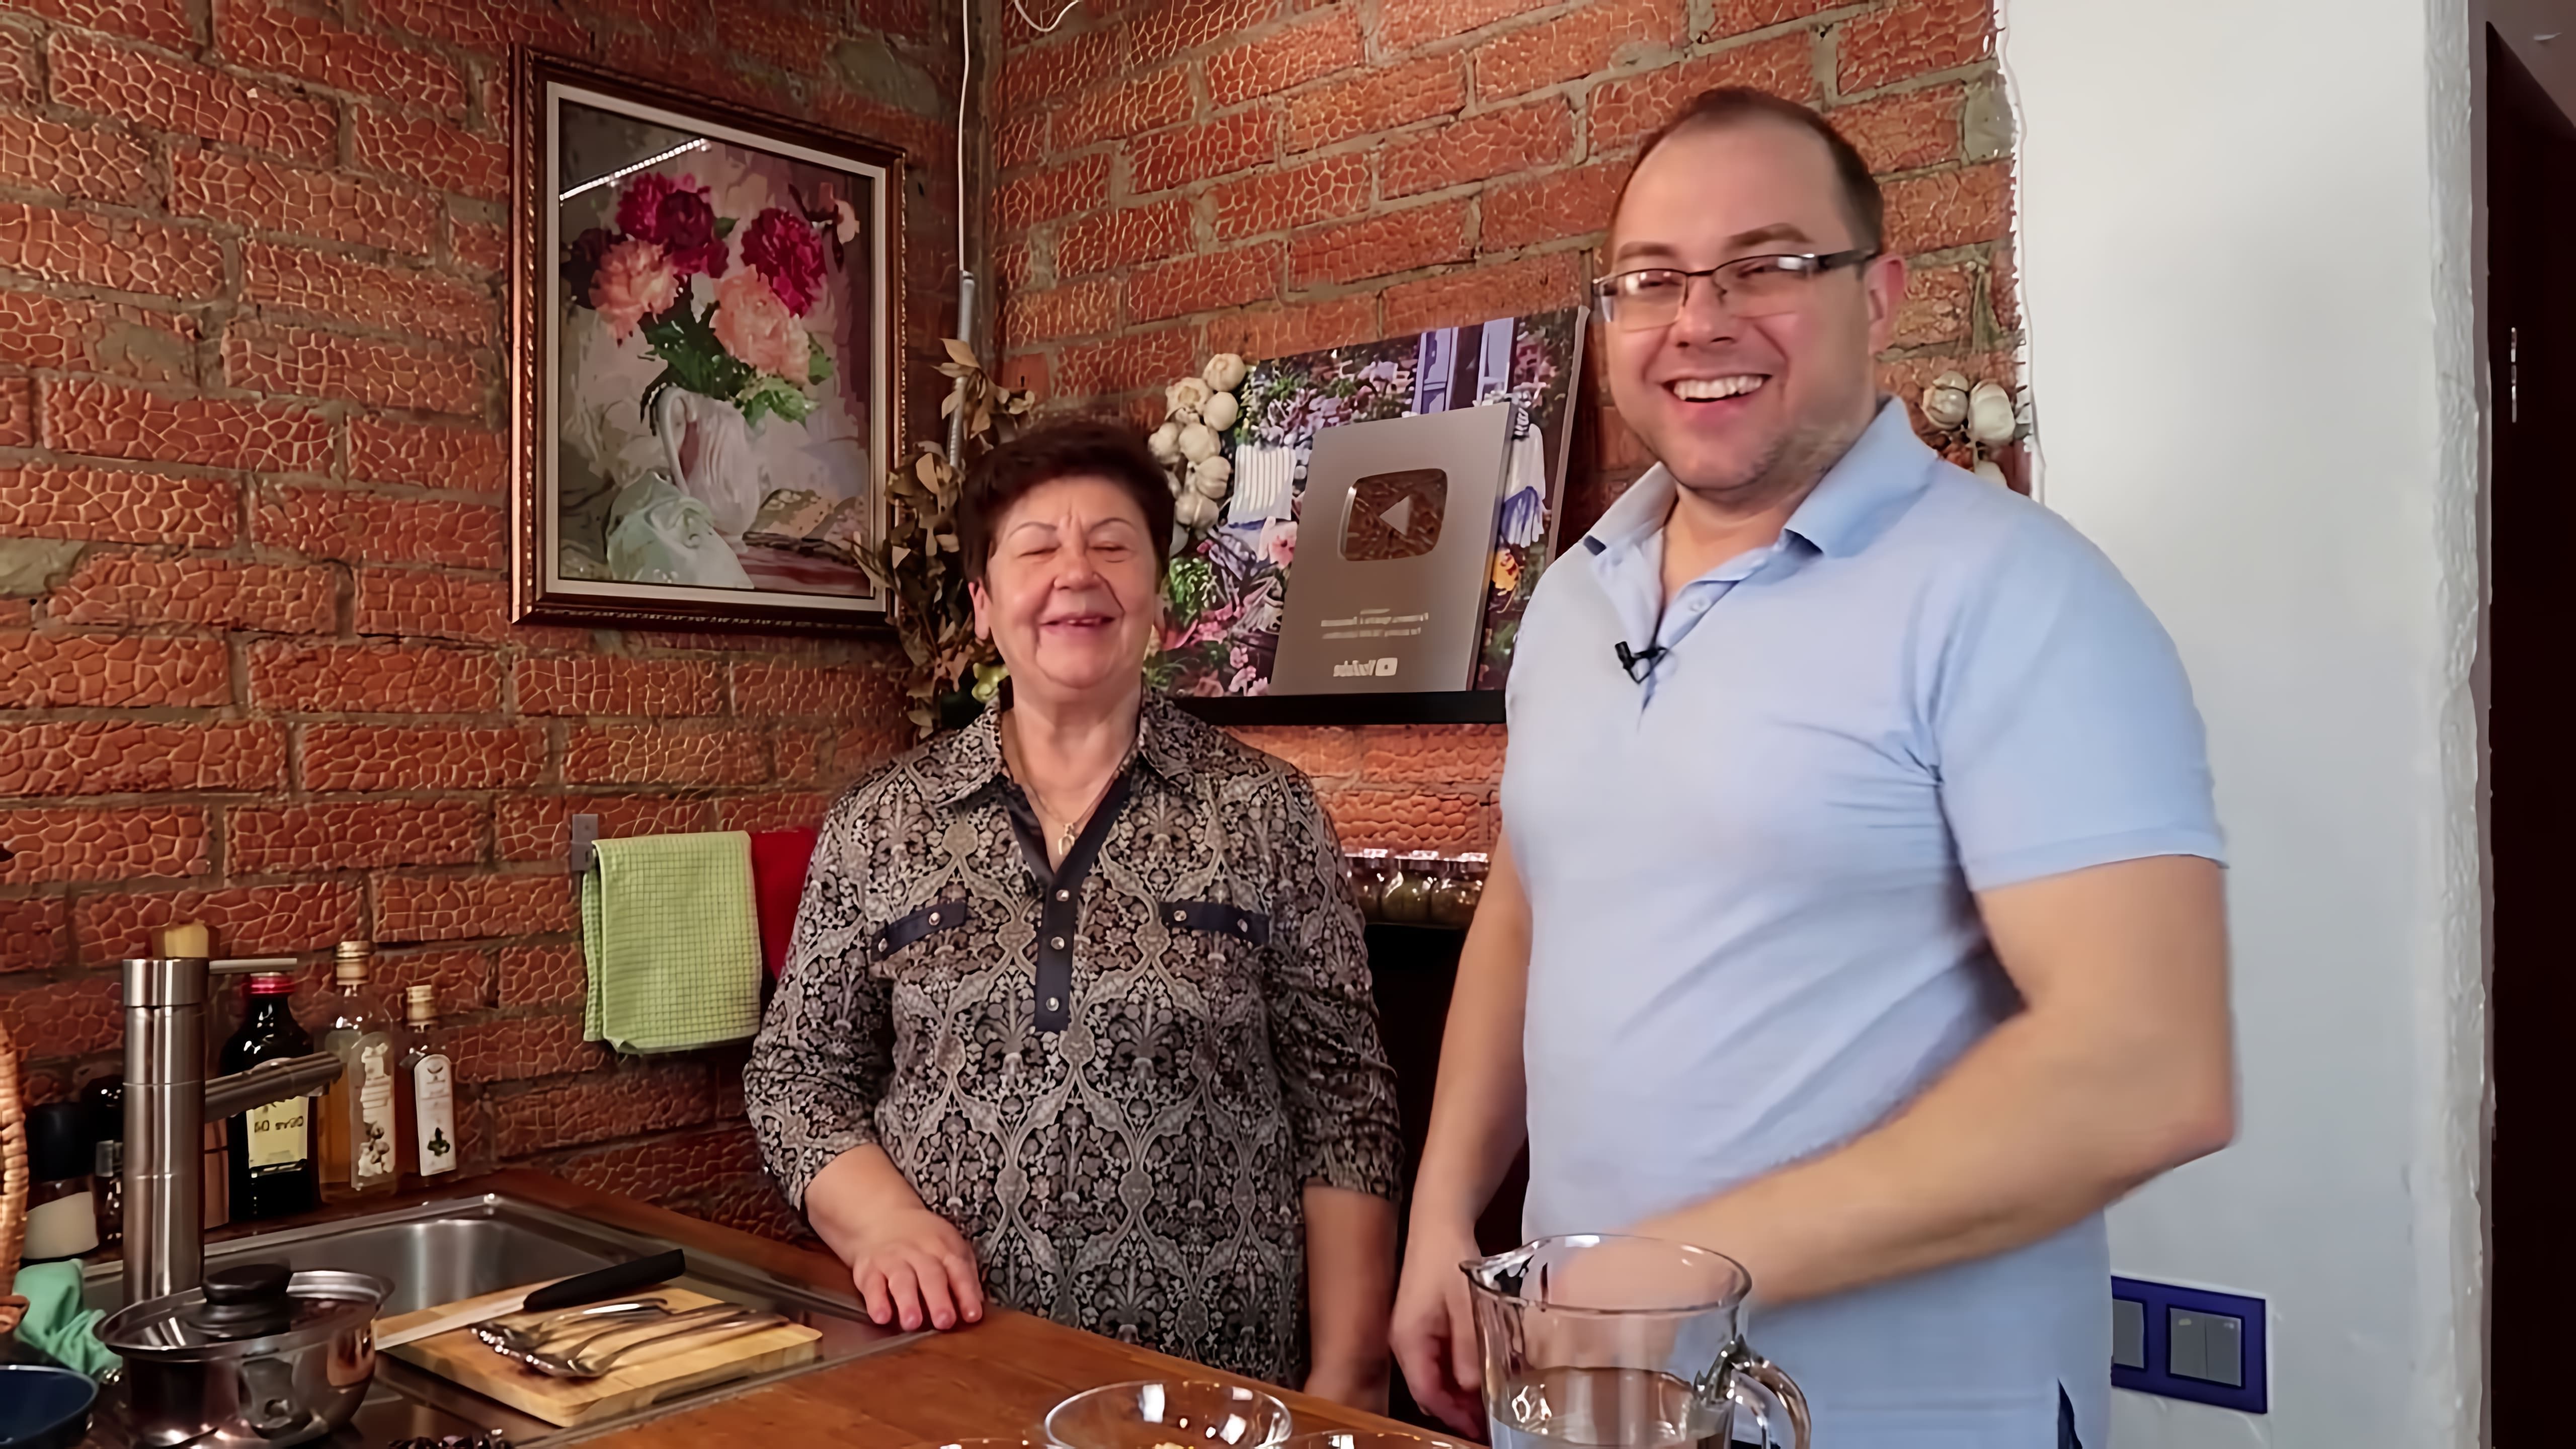 В данном видео демонстрируется процесс приготовления трех видов каши: манной, гречневой и овсяной